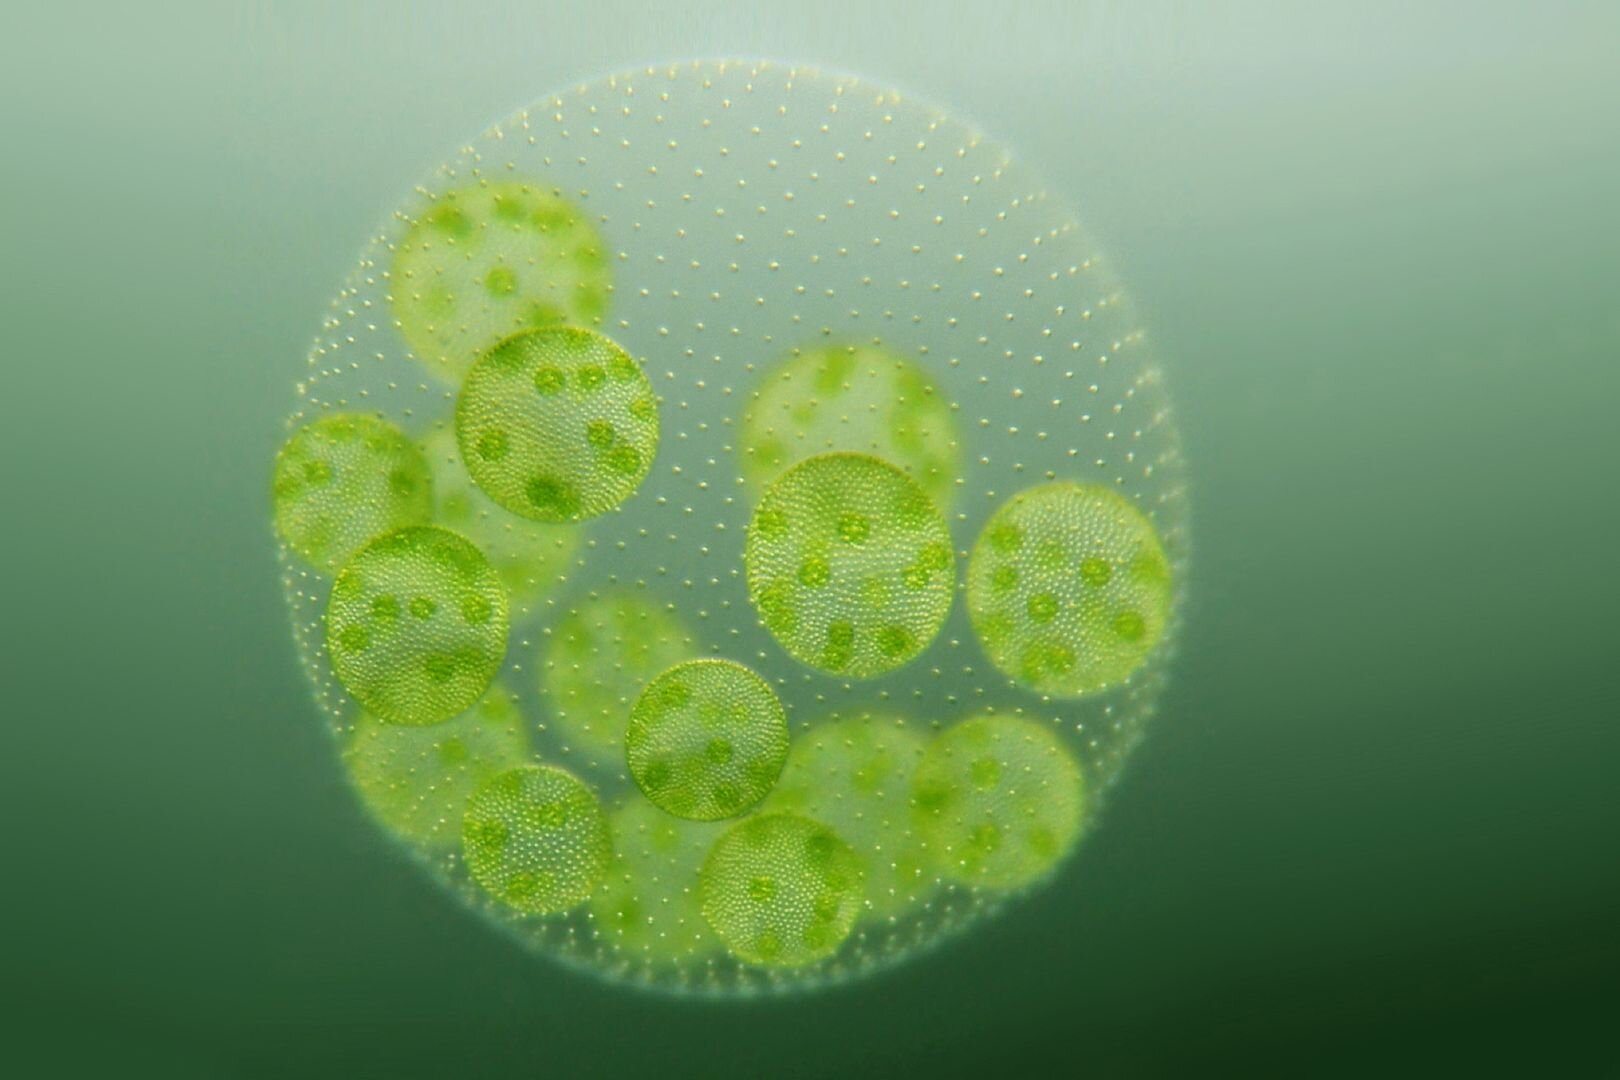 Известно что хламидомонада одноклеточная фотосинтезирующая зеленая водоросль. Одноклеточная водоросль хламидомонада. Вольвокс водоросль. Деление вольвокса. Вольвокс и хламидомонада.